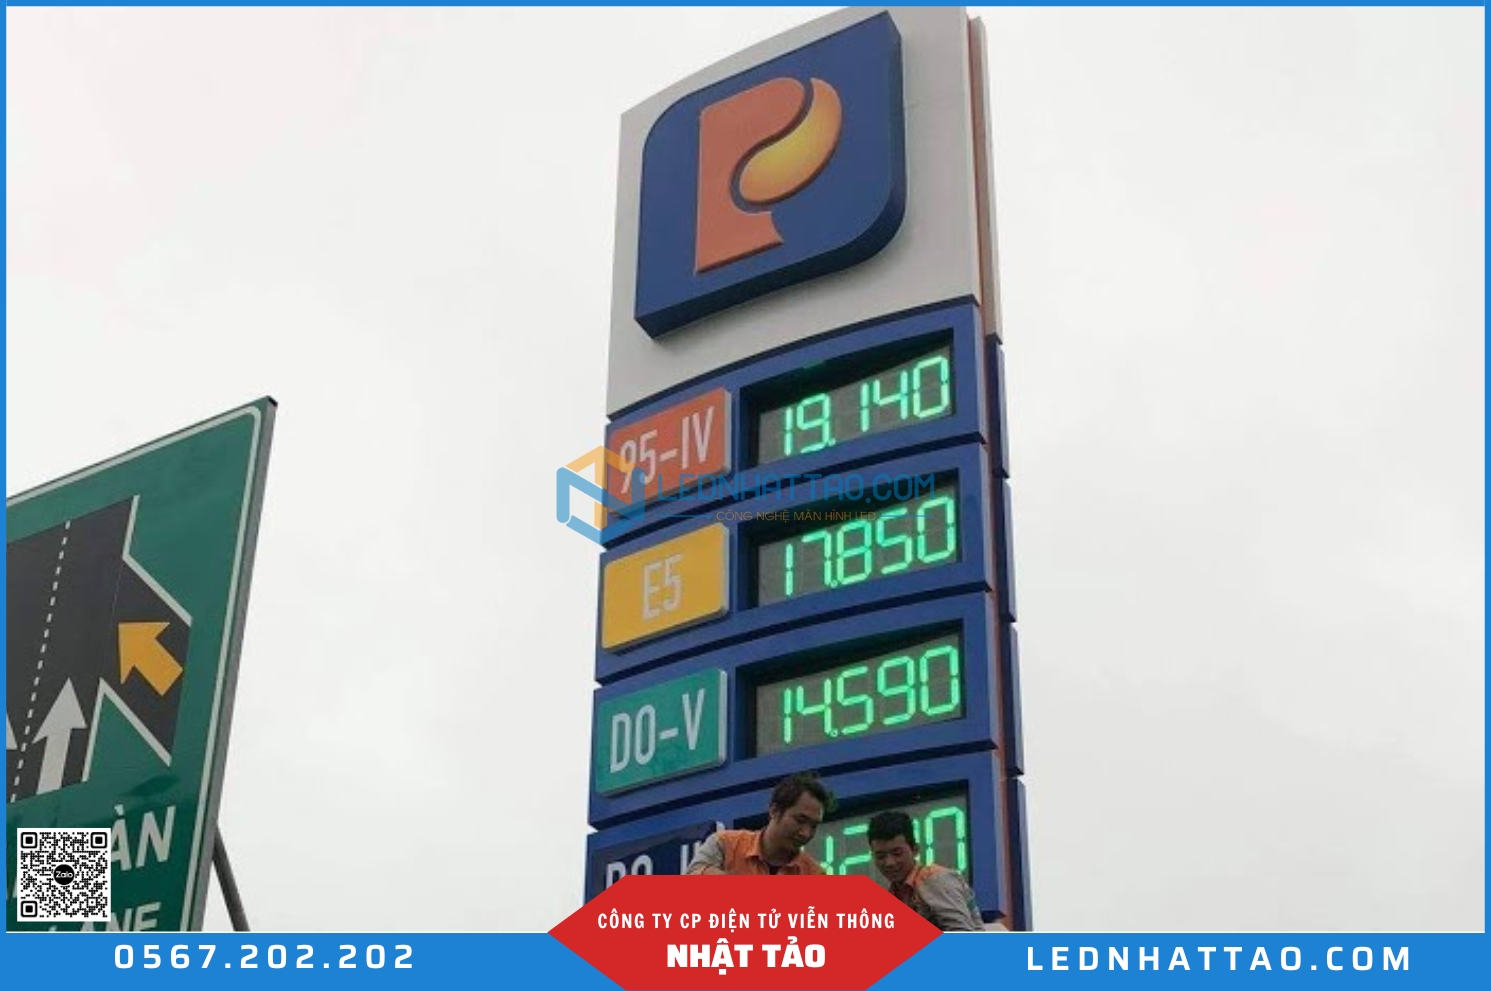 Bảng LED giá xăng dầu, bảng LED trạm xăng, Bảng LED hiển thị giá xăng dầu